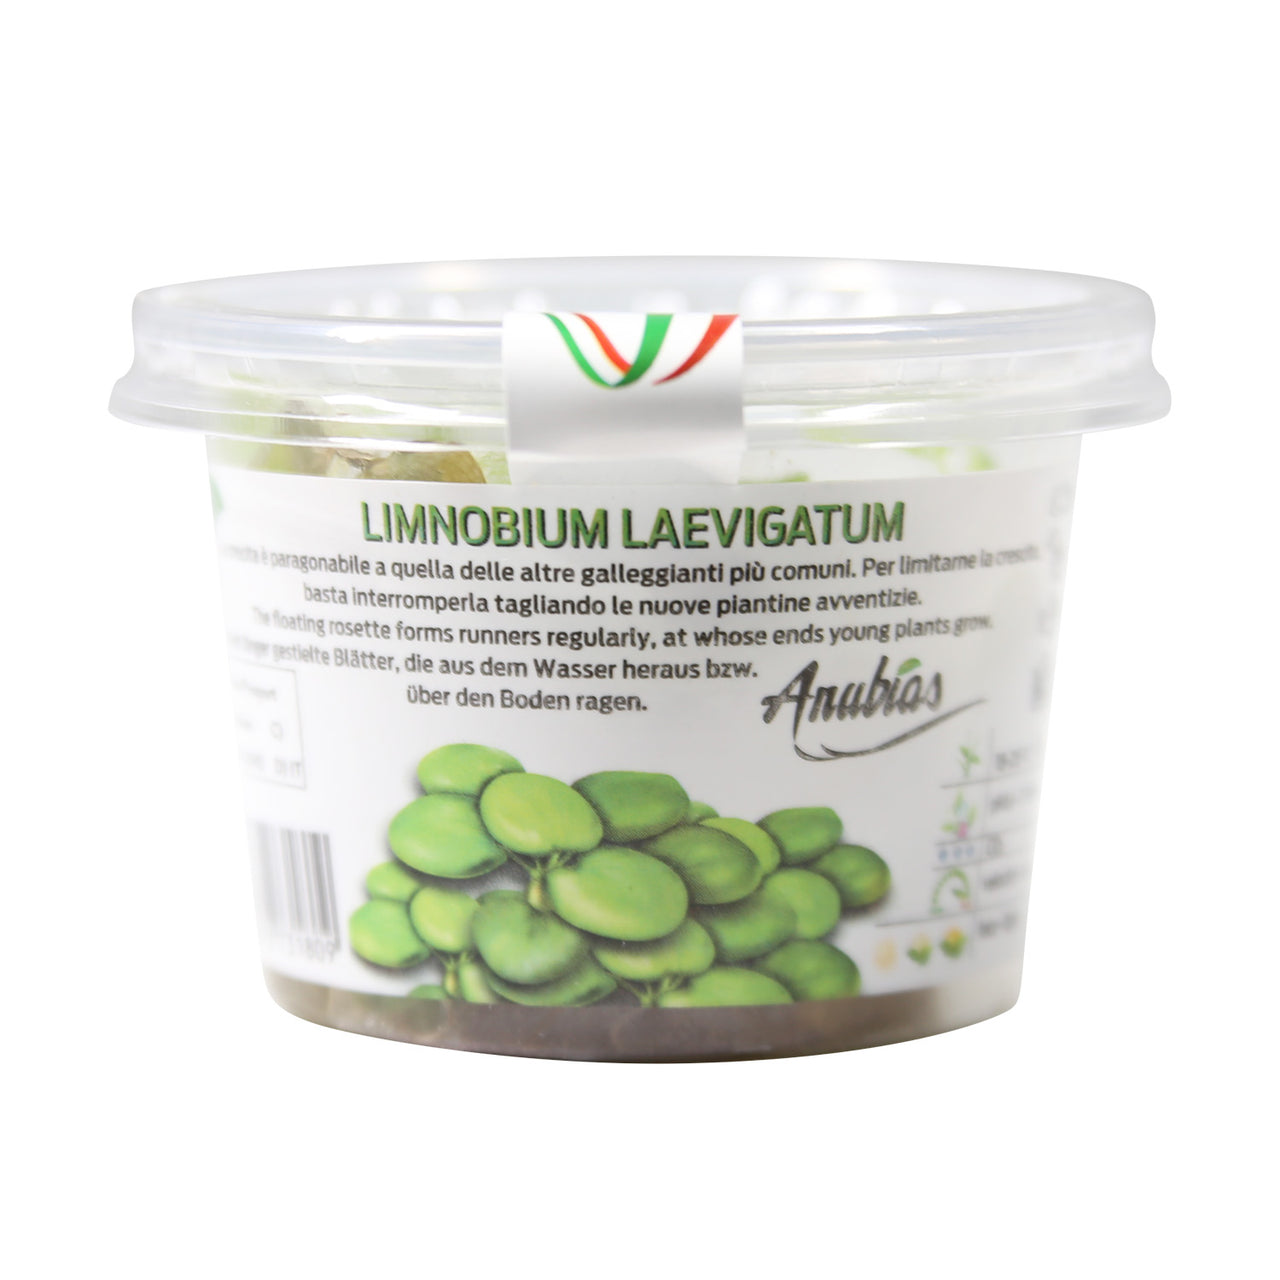 Amazon Frogbit / "Limnobium Laevigatum" Tissue Culture Cup